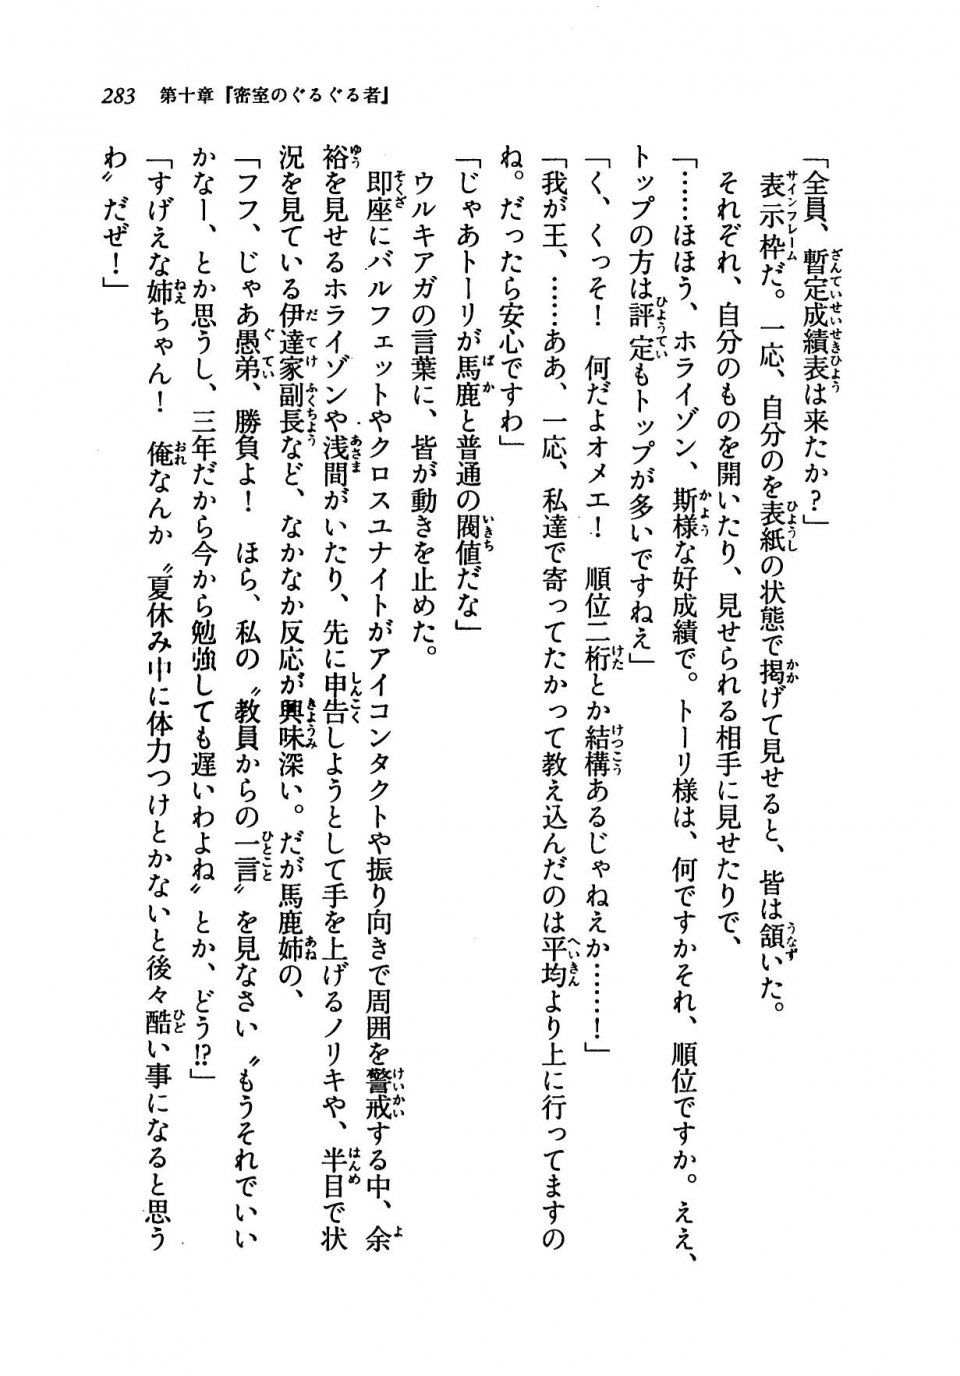 Kyoukai Senjou no Horizon LN Vol 19(8A) - Photo #283